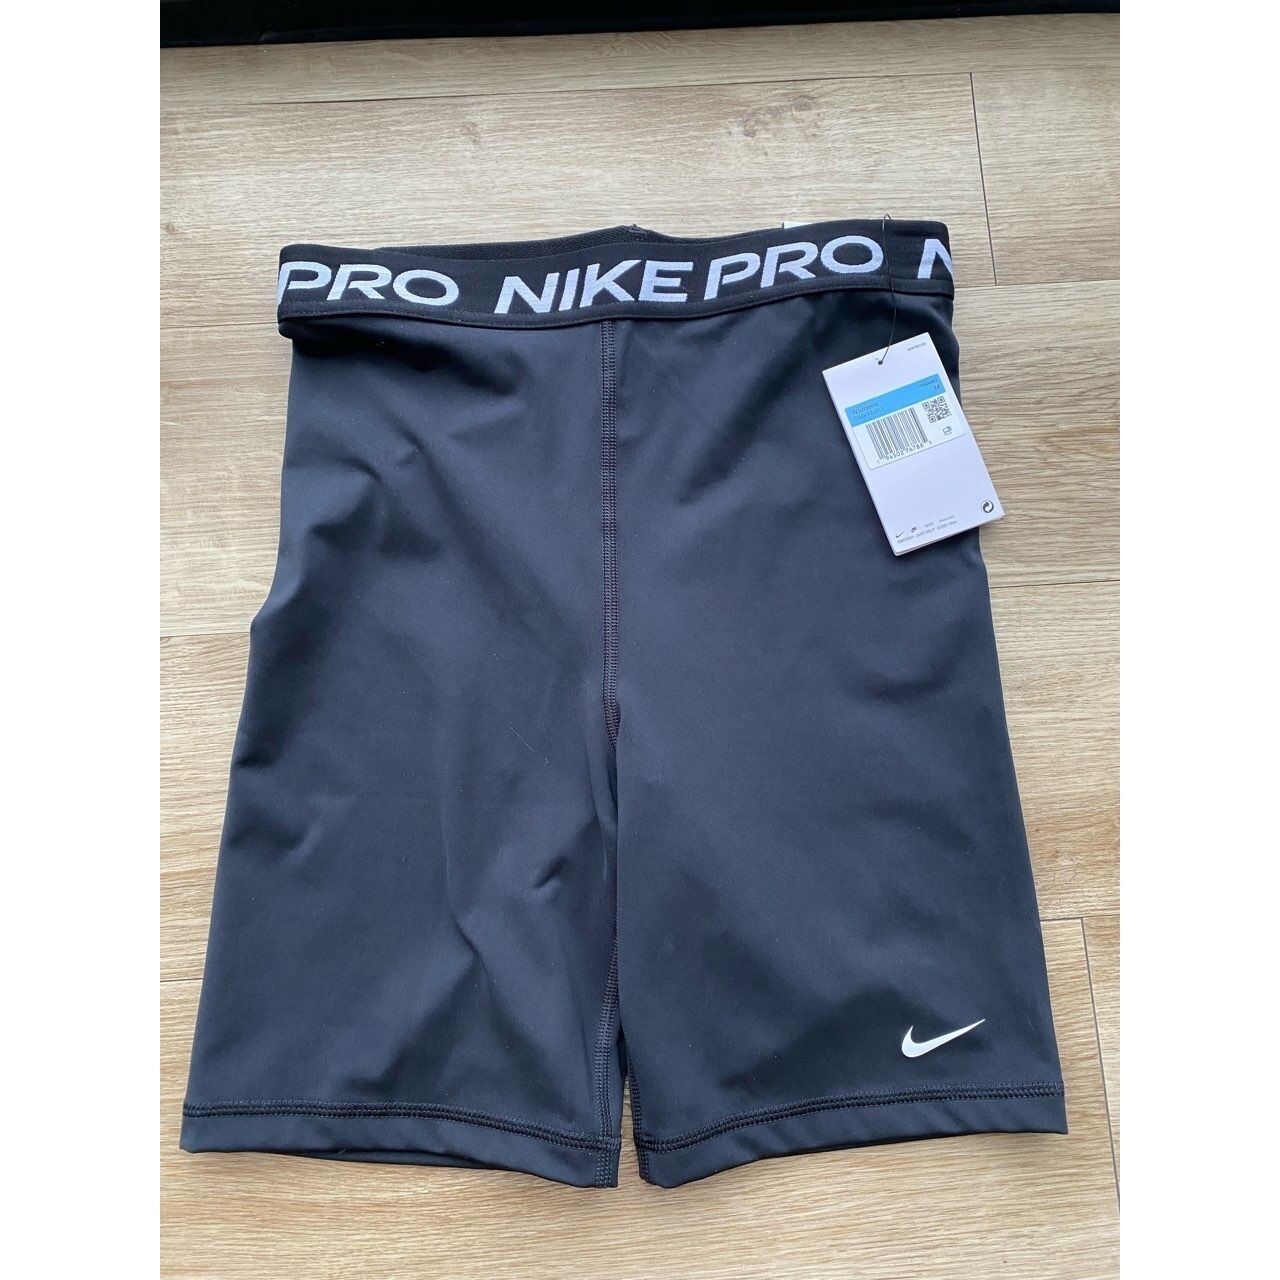 Nike Pro 365 hi-rise short